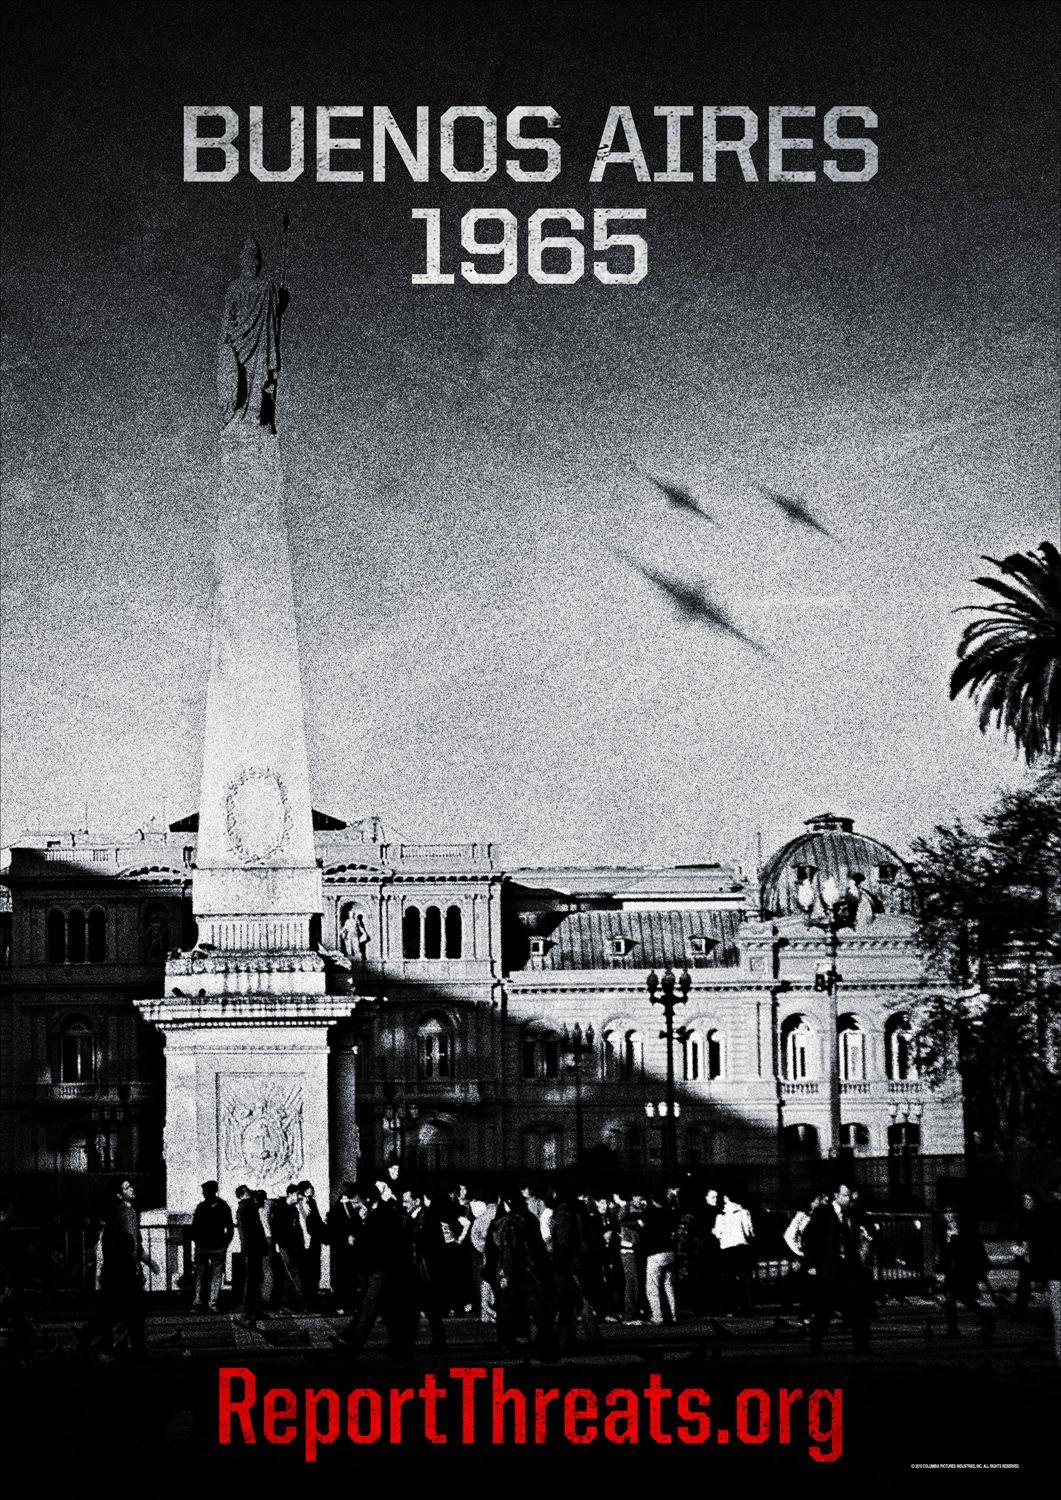 Постер фильма Инопланетное вторжение: Битва за Лос-Анджелес | Battle: Los Angeles